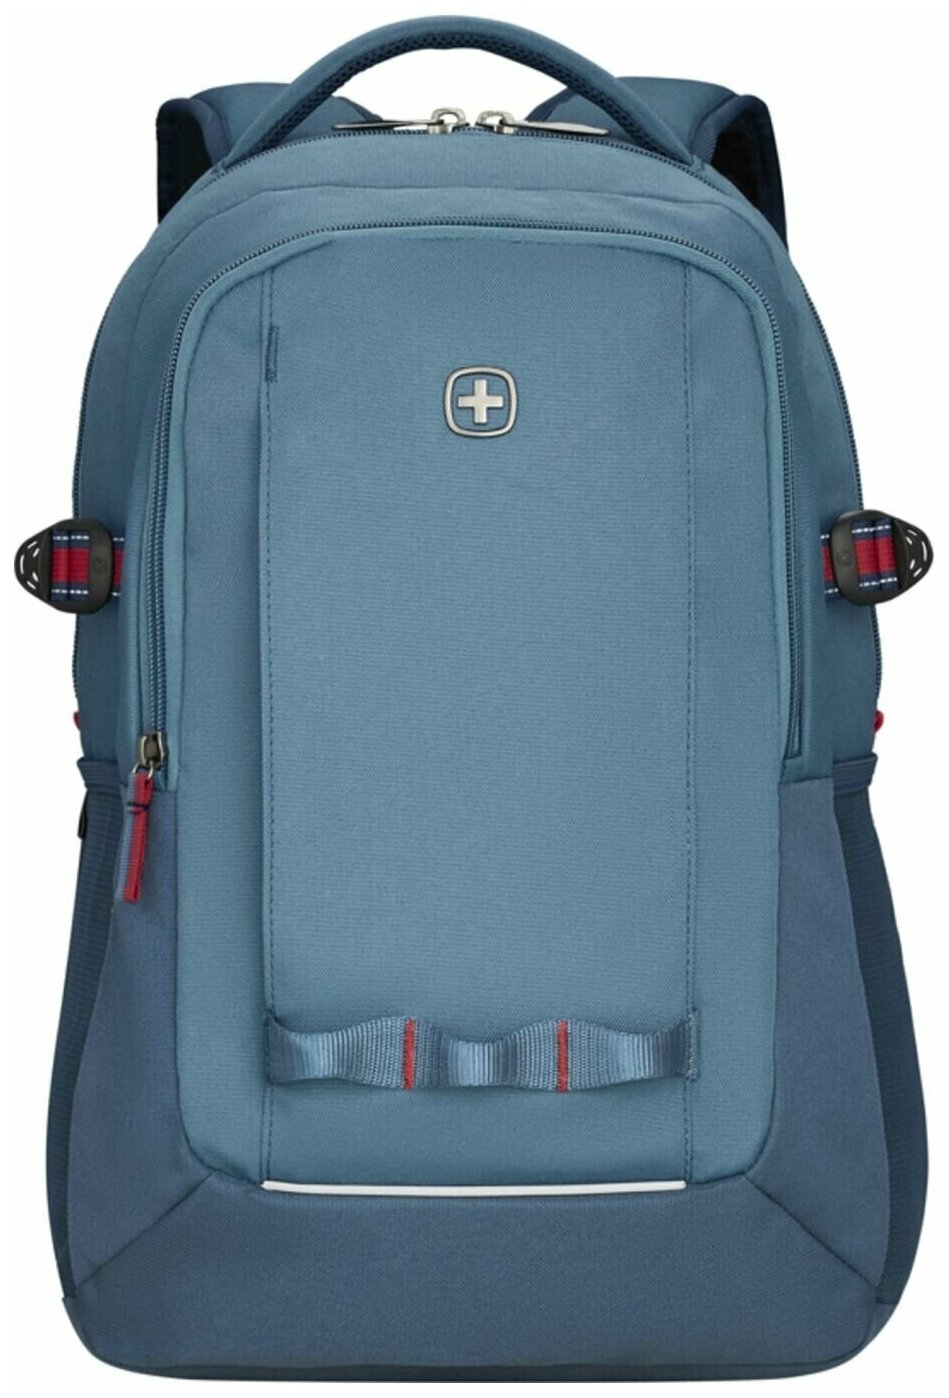 Городской рюкзак WENGER NEXT Ryde, с отделением для ноутбука 16", голубой/деним, переработанный ПЭТ/Полиэстер, 32х21х47 см, 26 л (611992)